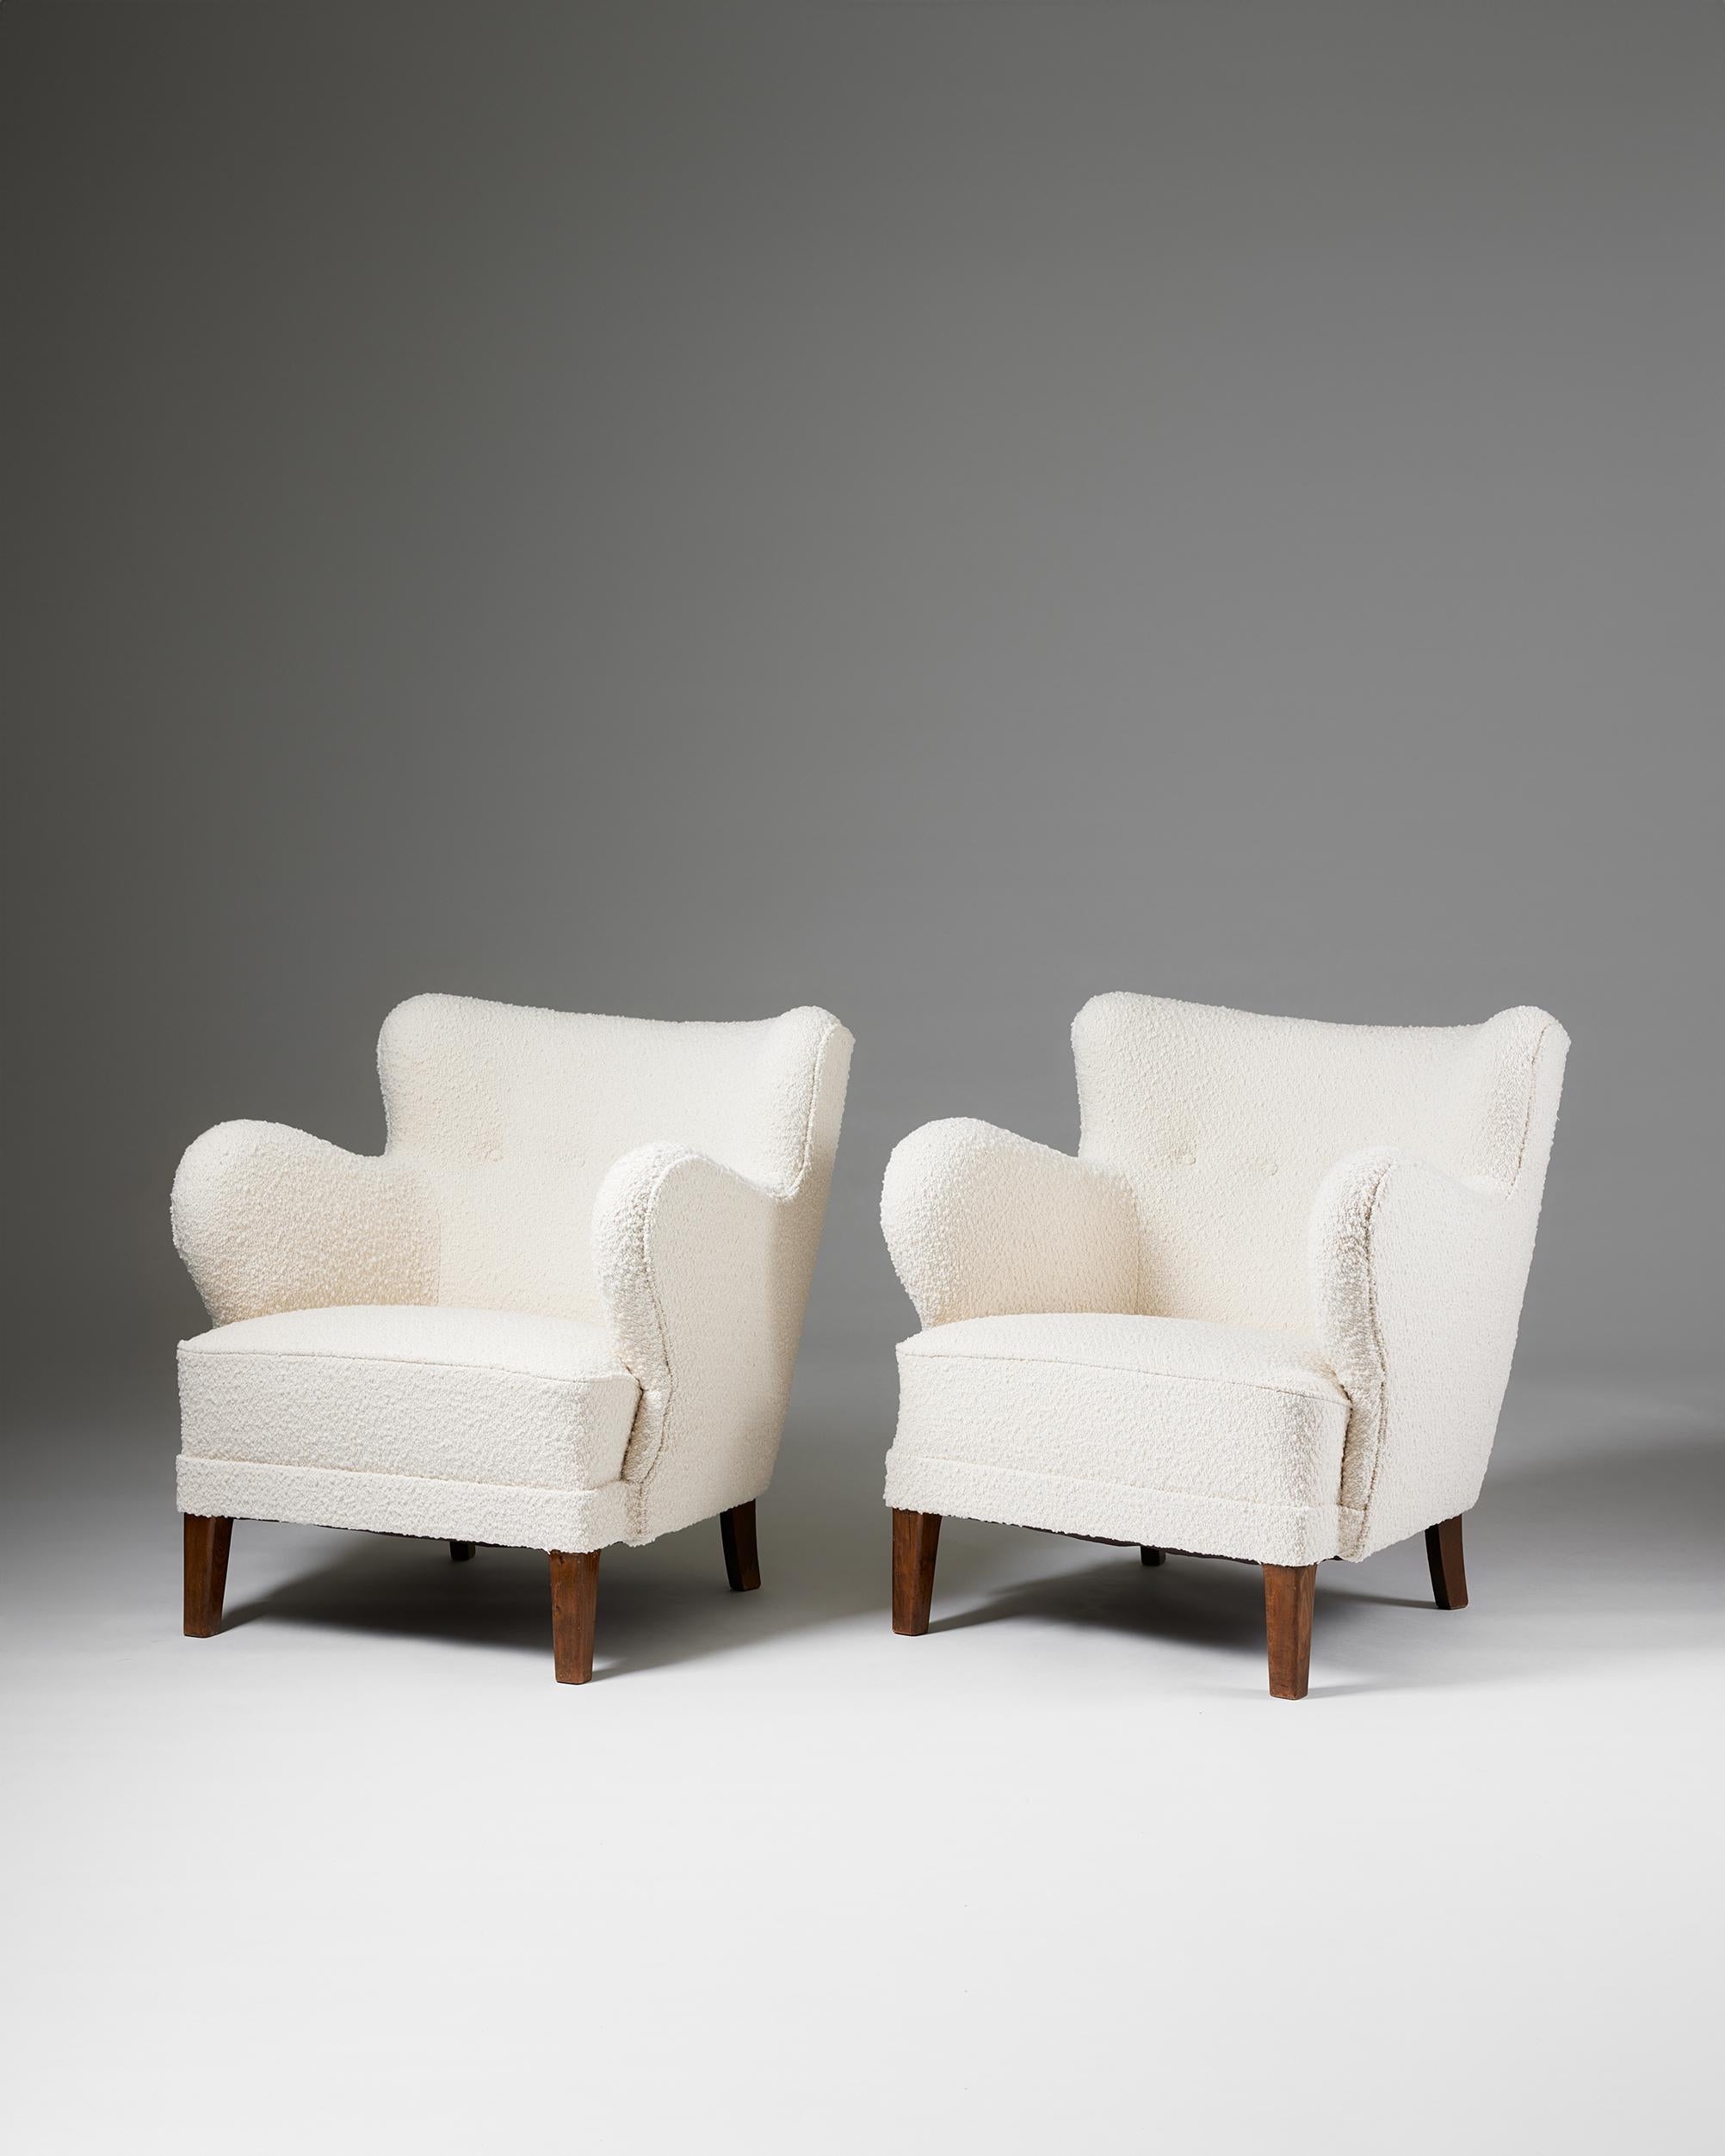 Ein Paar Sessel, anonym,
Dänemark, 1940er Jahre.

Buche gebeizt und gepolstert.

H: 79 cm
B: 71 cm
T: 72 cm
SH: 41 cm
AH: 66 cm